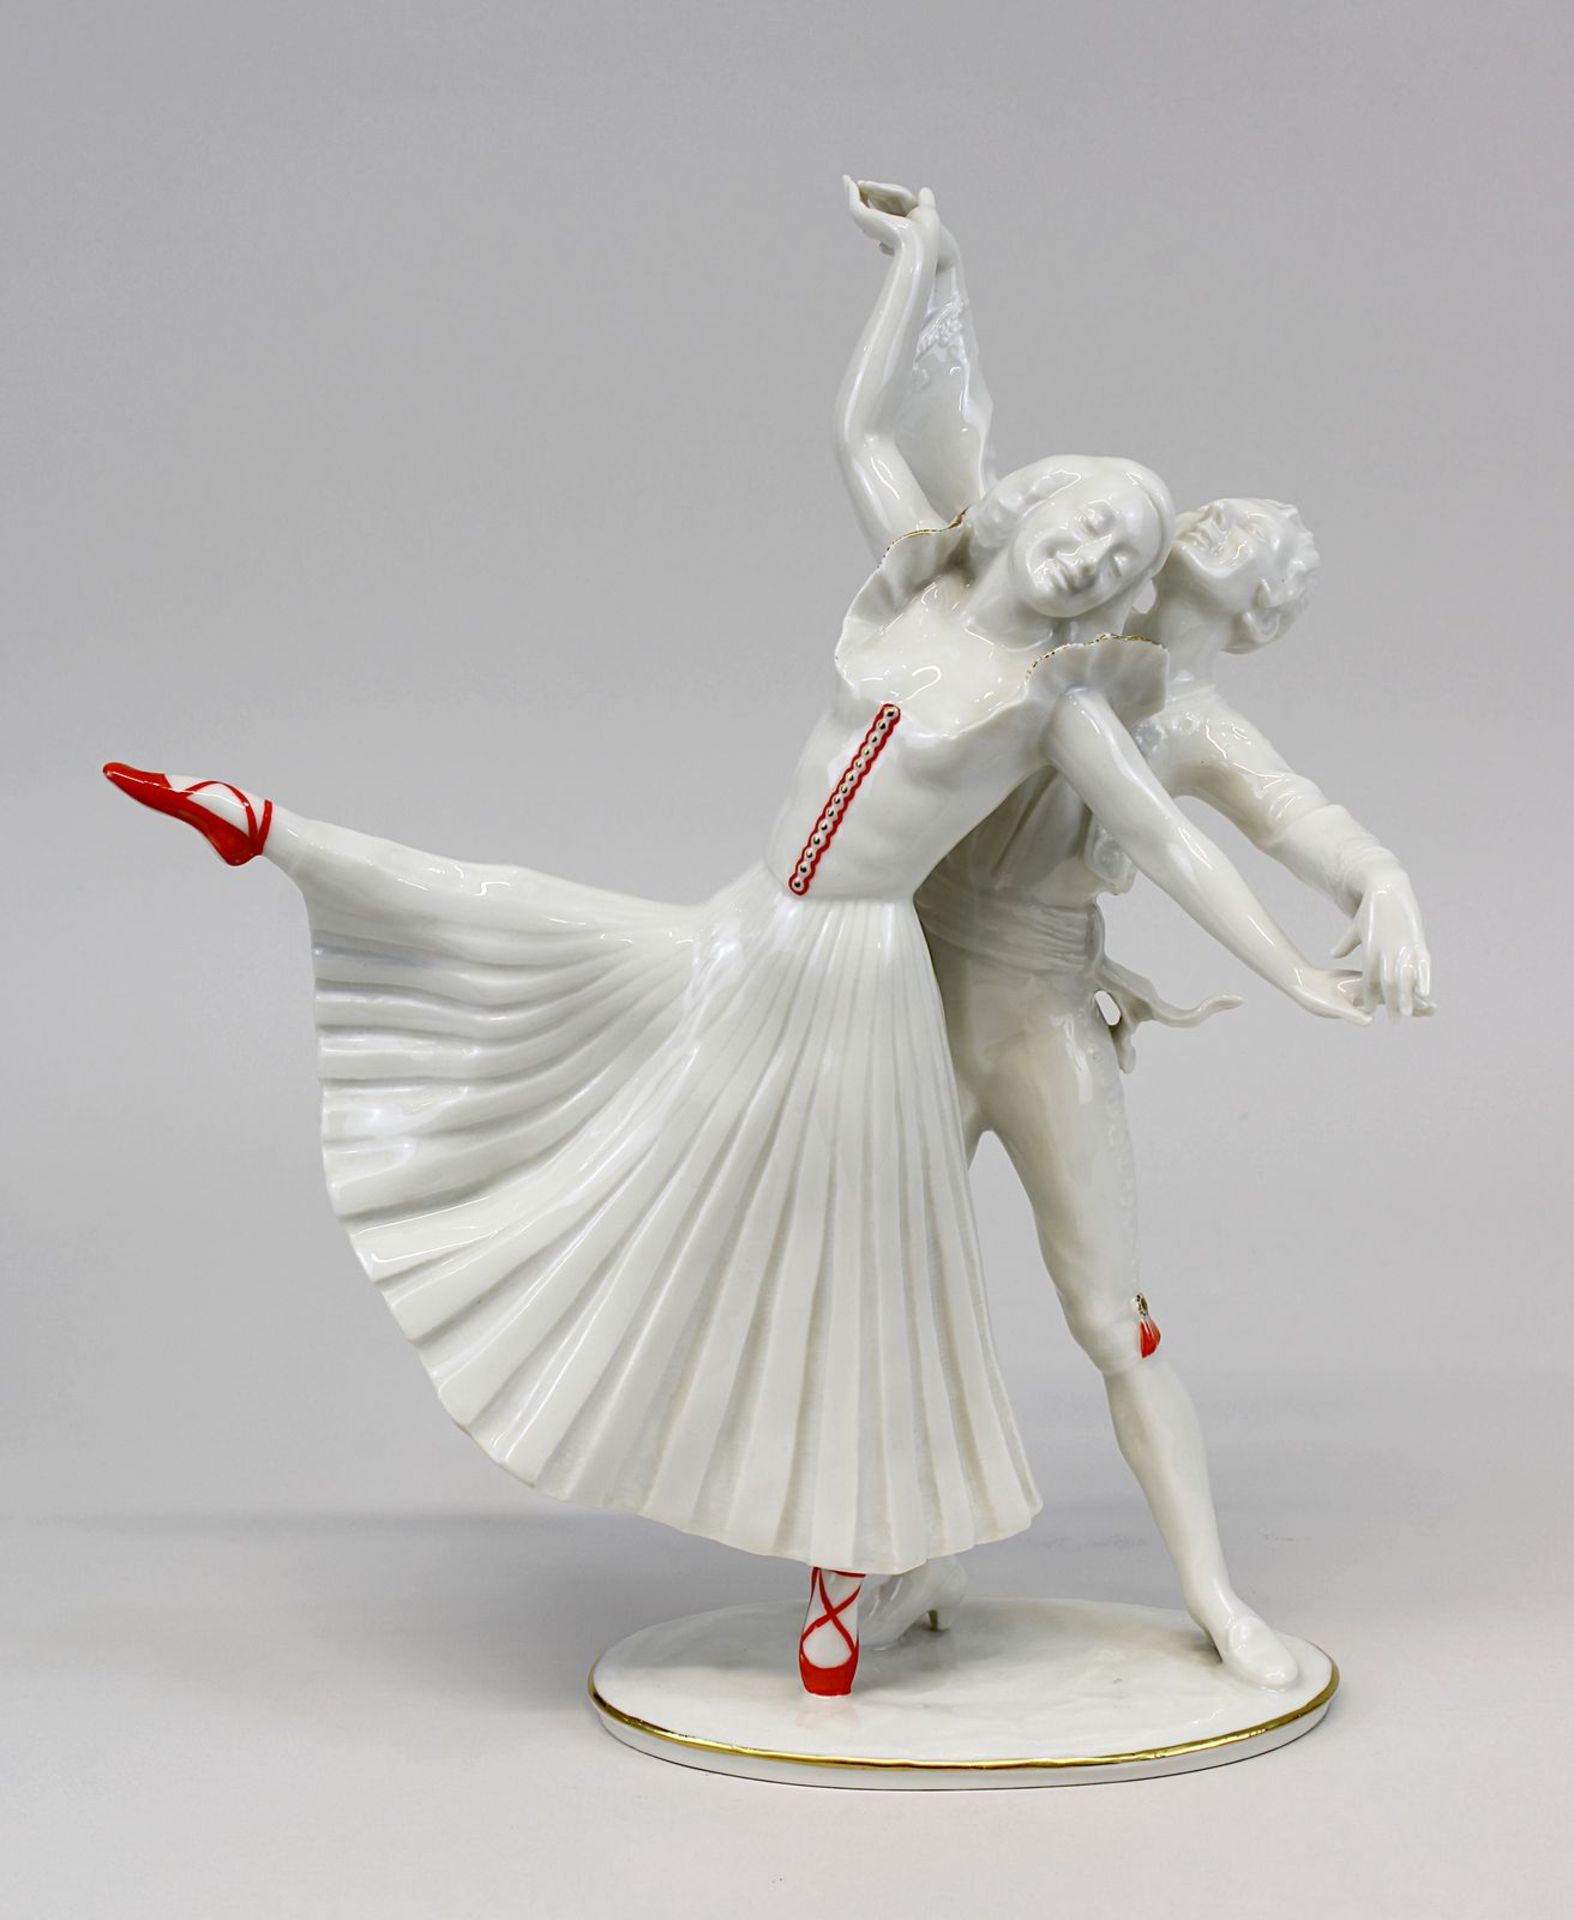 Hutschenreuther Porzellan-Tanzfigur Die roten Schuhe, Entwurf Carl Werner um 1930, ausgeformt